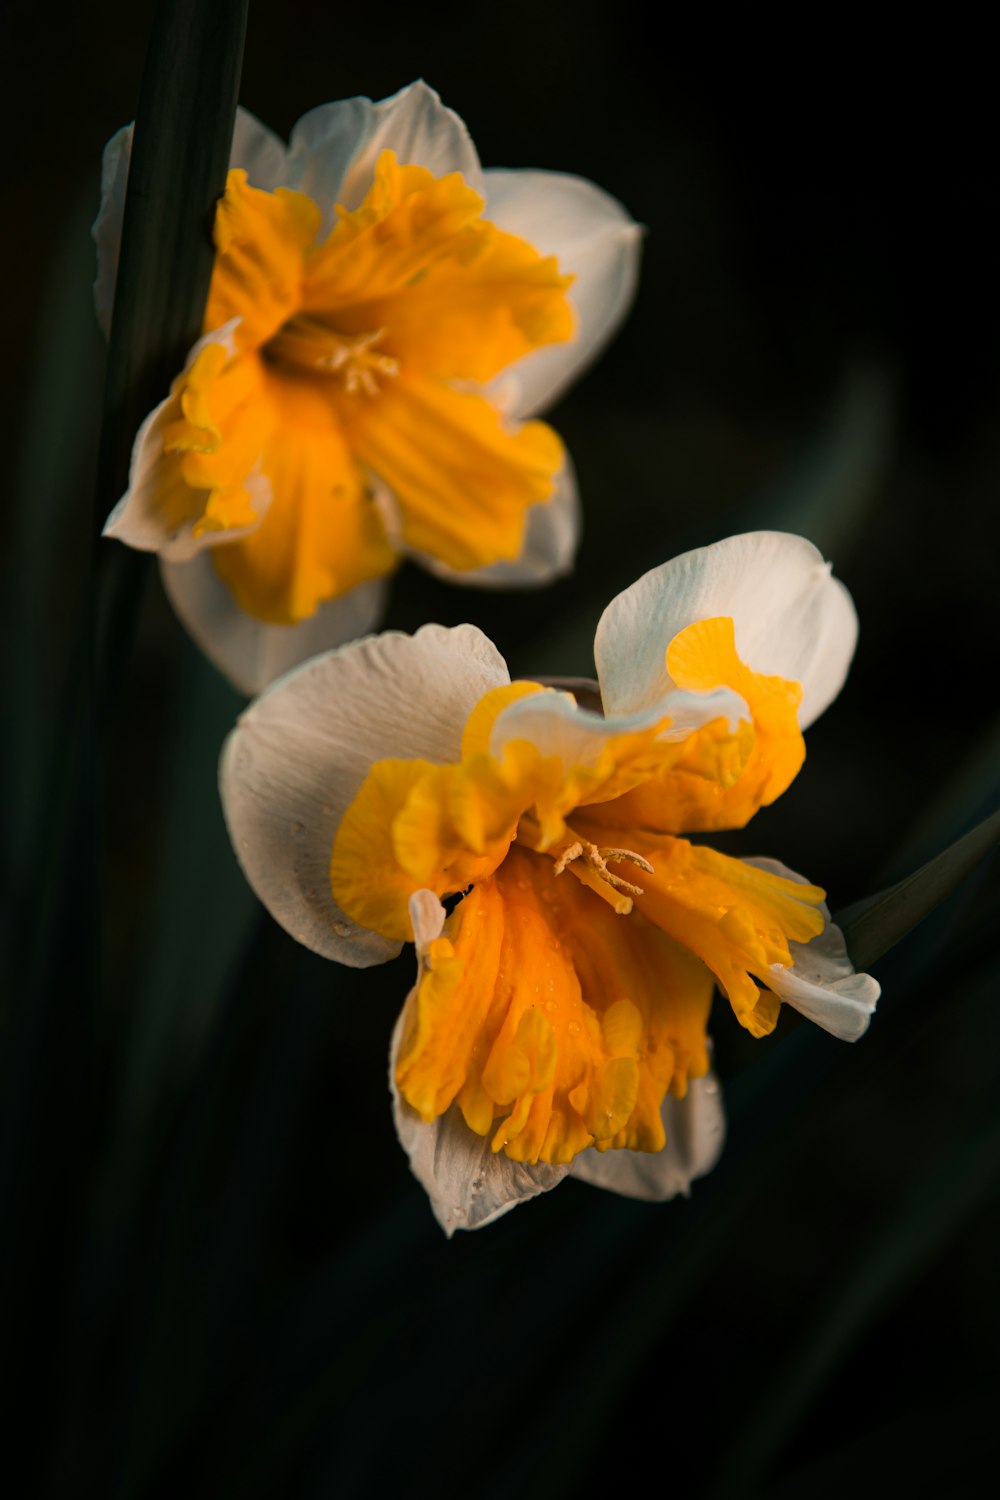 flor amarilla y blanca en fotografía de primer plano